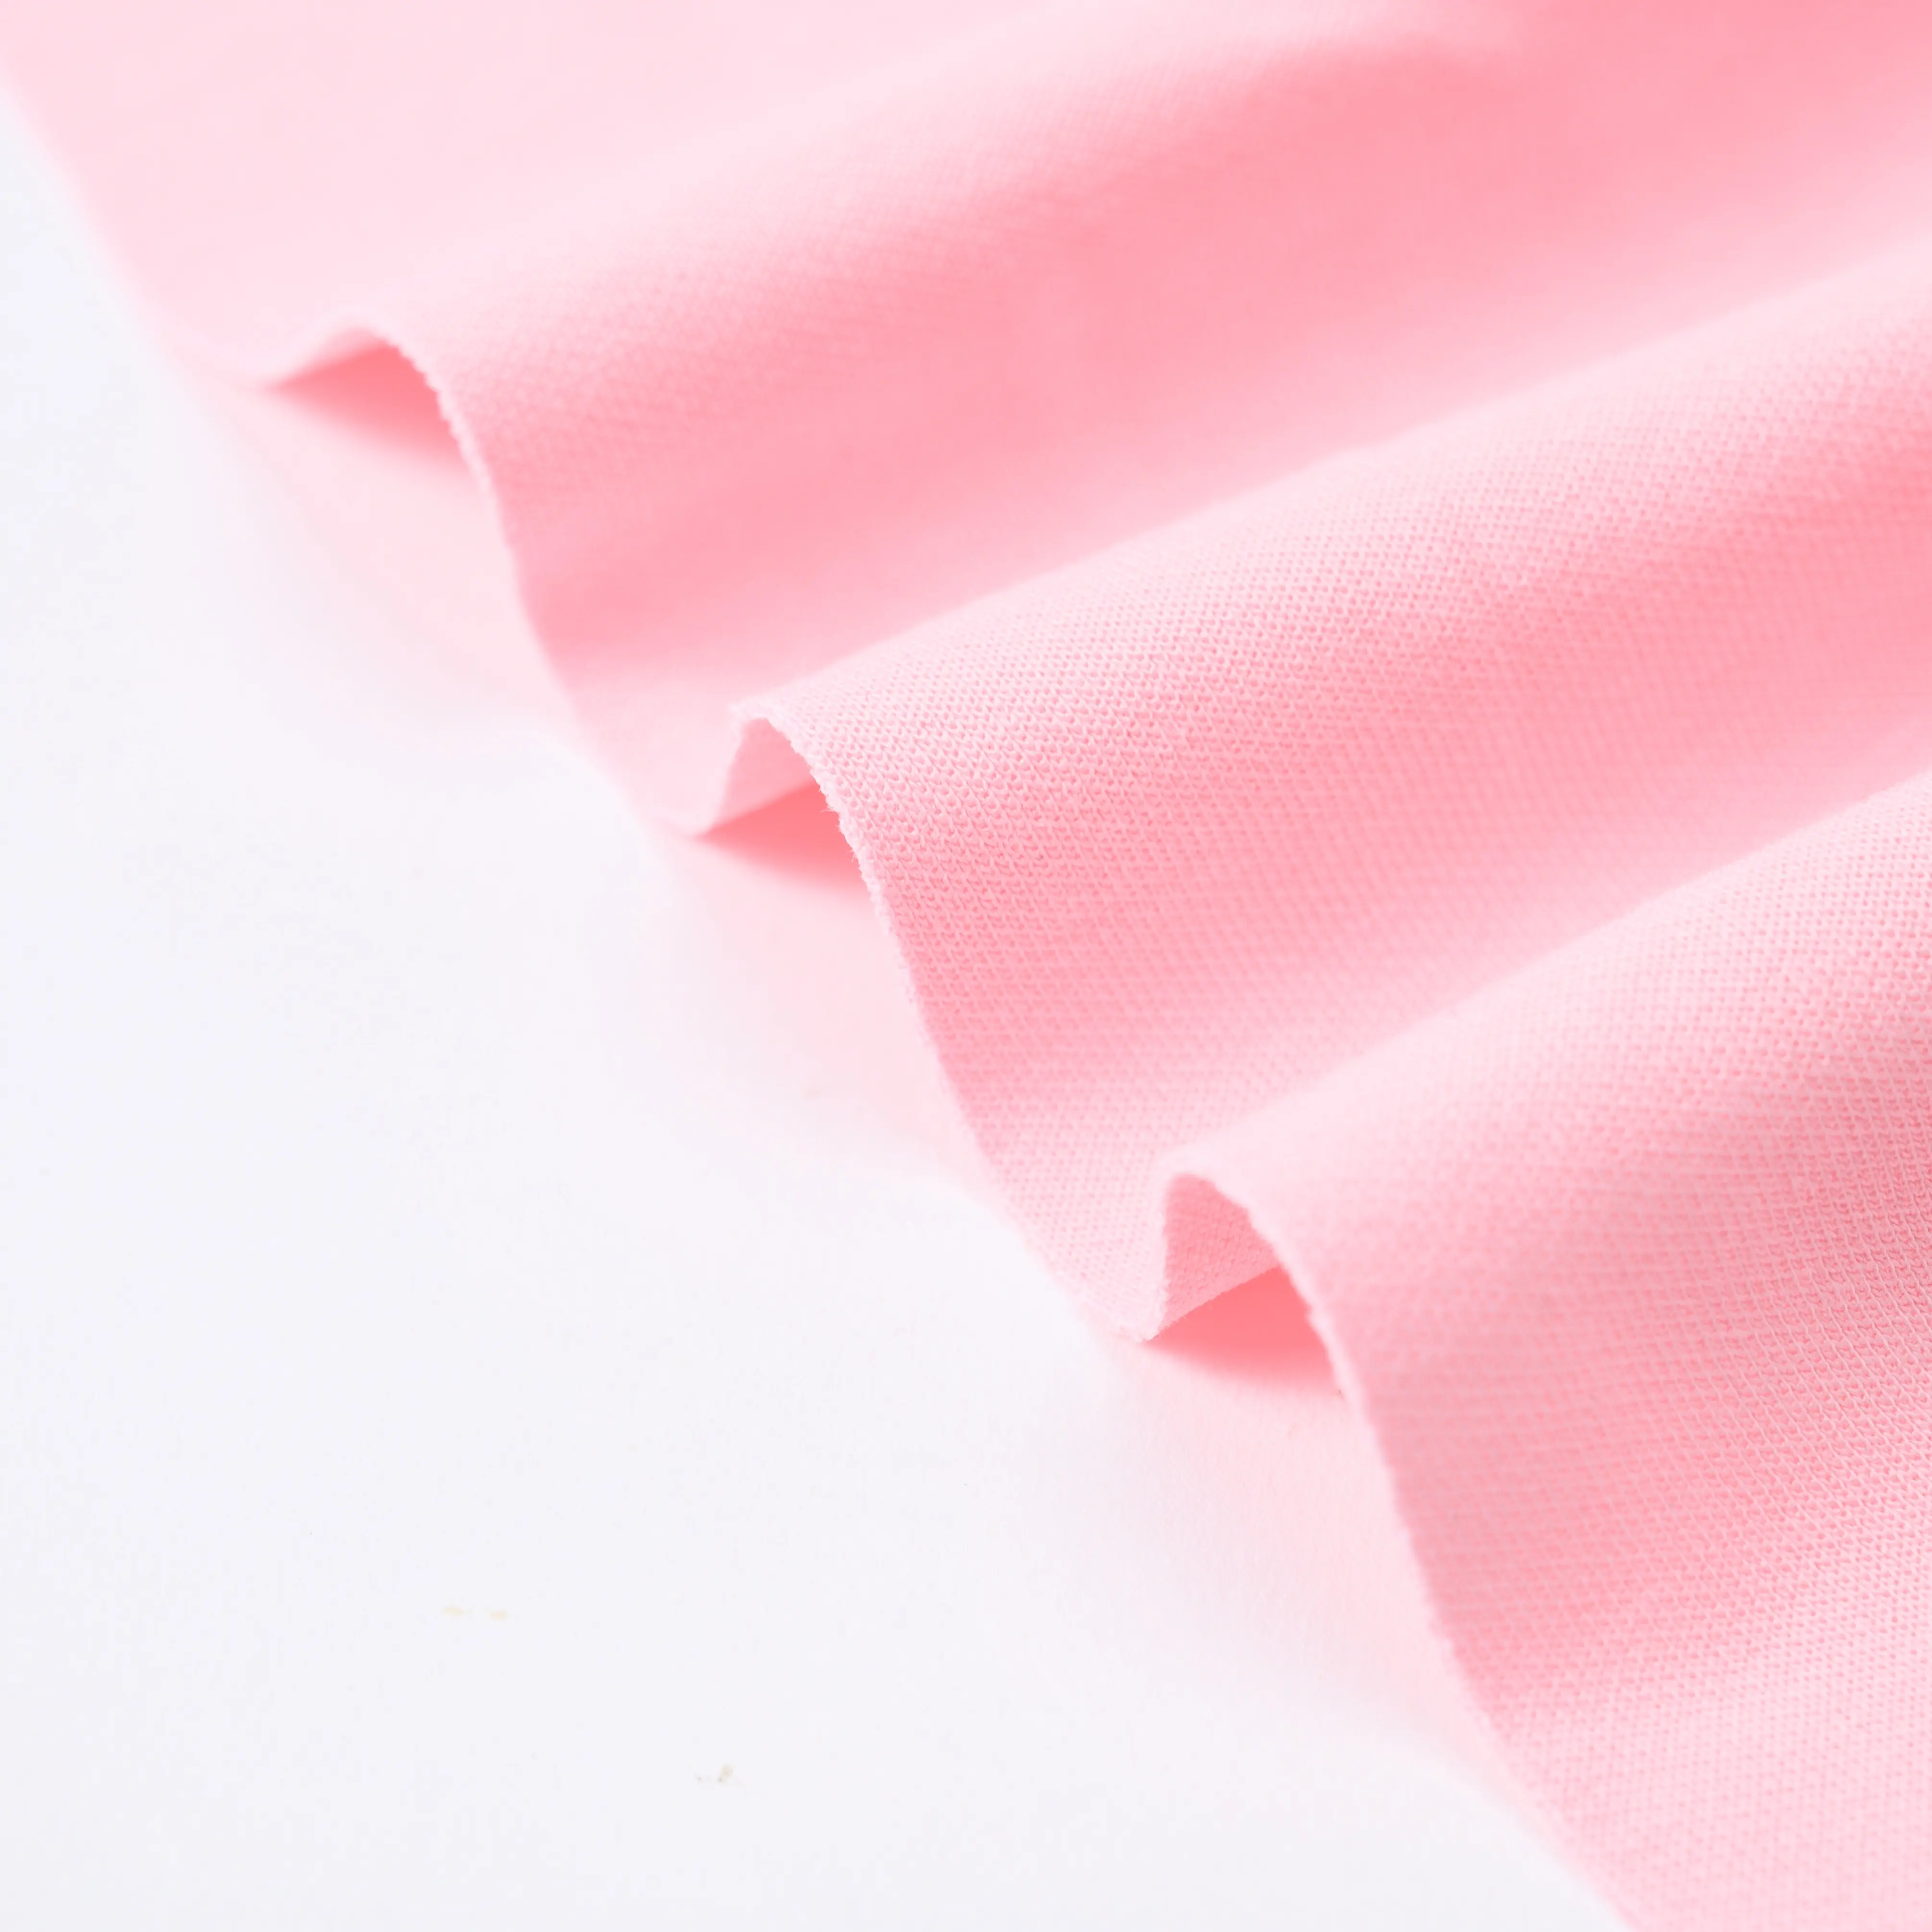 Grosir kain kesehatan regang kain spandeks poliester untuk pakaian olahraga dalam ruangan pakaian rumah 95 poliester 5 kain spandeks